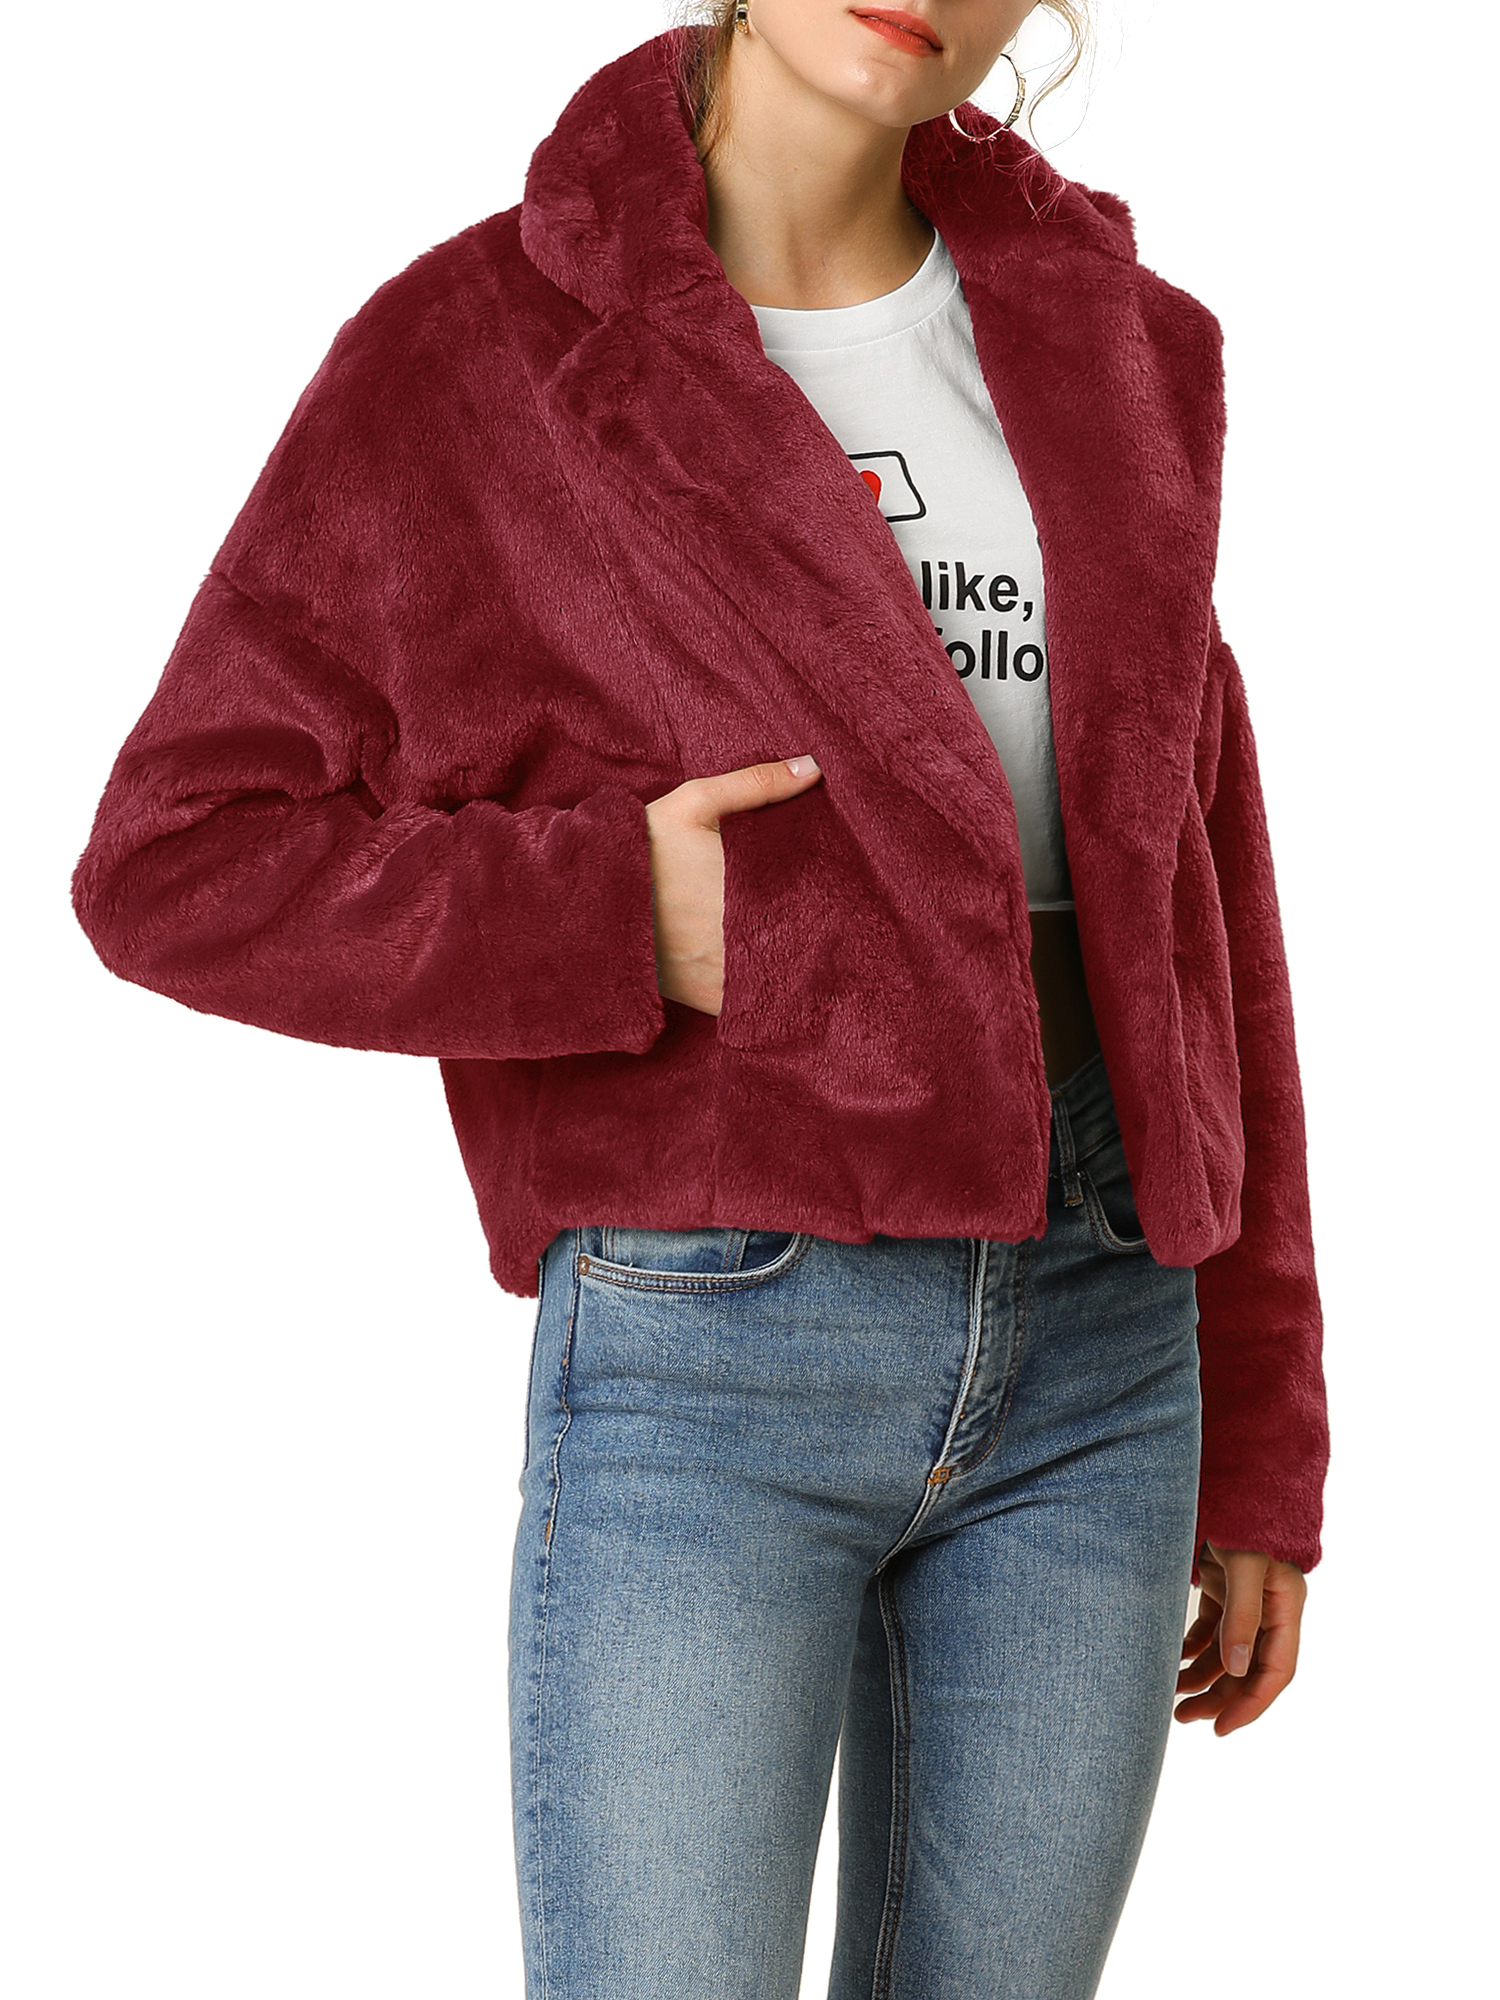 Unique Bargains Women's Cropped Jacket Notch Lapel Faux Fur Fluffy Coat L Burgundy - image 4 of 7